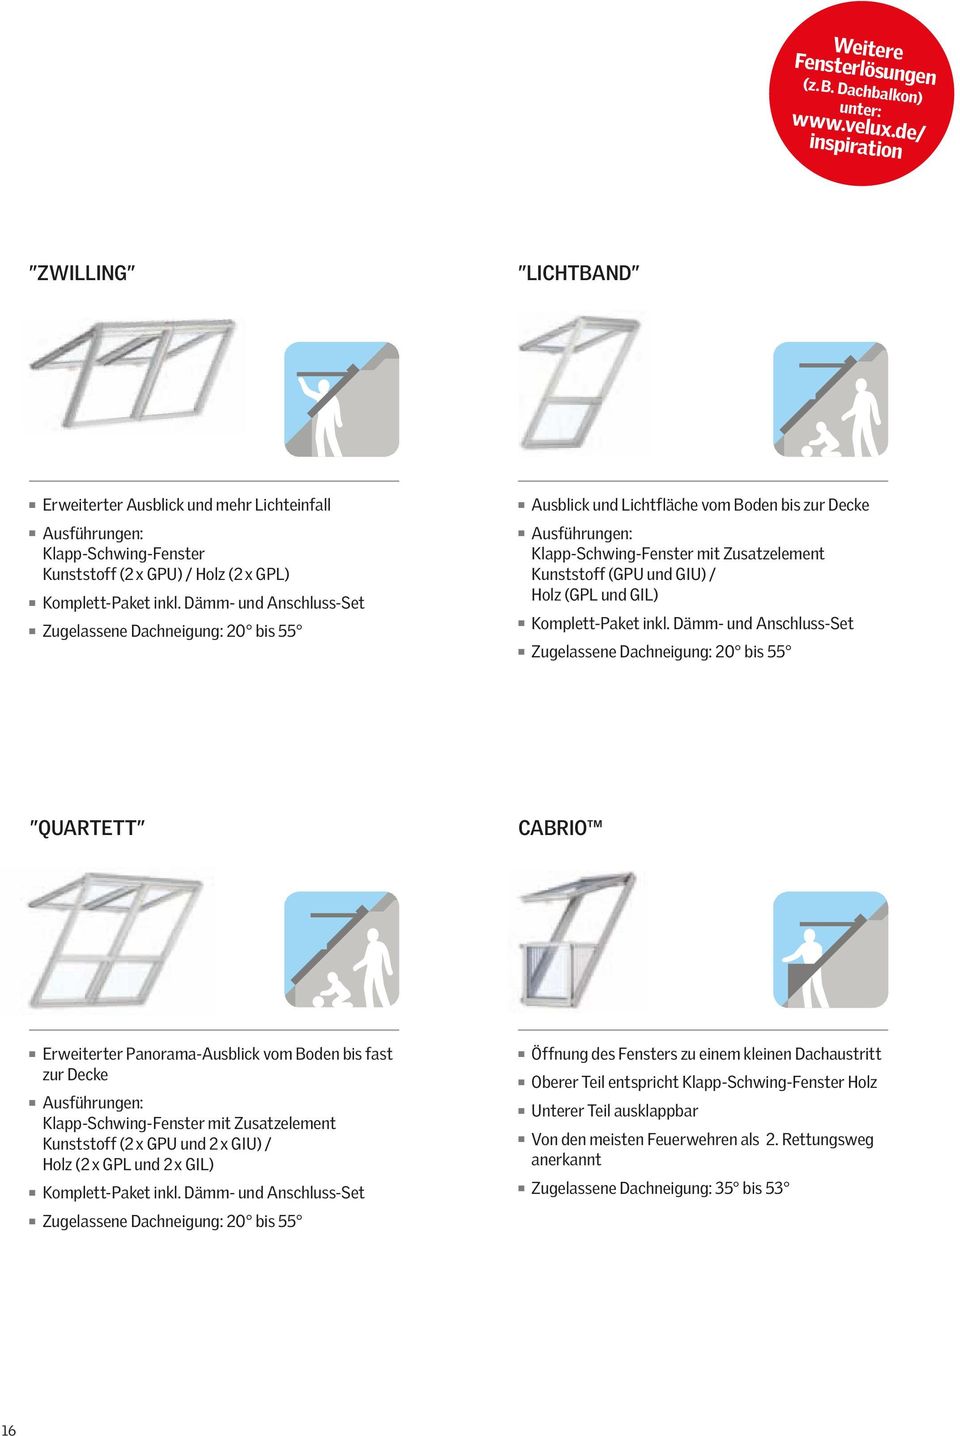 Dämm- und Anschluss-Set Zugelassene Dachneigung: 20 bis 55 Ausblick und Lichtfläche vom Boden bis zur Decke Ausführungen: Klapp-Schwing-Fenster mit Zusatzelement Kunststoff (GPU und GIU) / Holz (GPL